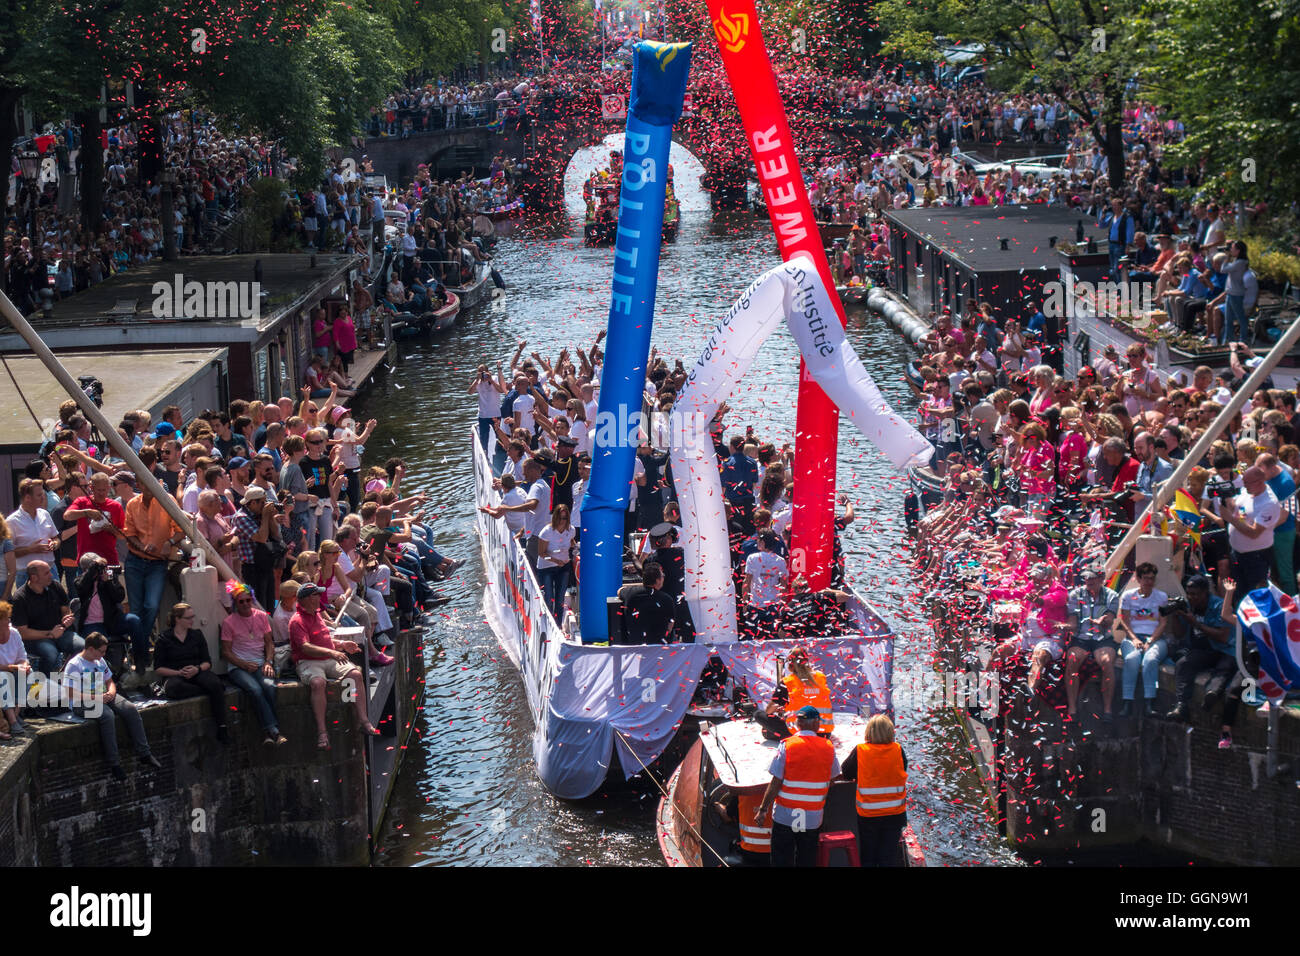 Amsterdam, Niederlande. 6. August 2016. Die jährliche Amsterdam Gay Pride Canal Parade war eine special Edition, weil Amsterdam EuroPride in diesem Jahr gehostet wird. Riesige Menschenmassen jubelten über 80 Boote auf den Prinsengracht Kanal und Fluss Amstel. Bildnachweis: Wiskerke/Alamy Live-Nachrichten Stockfoto